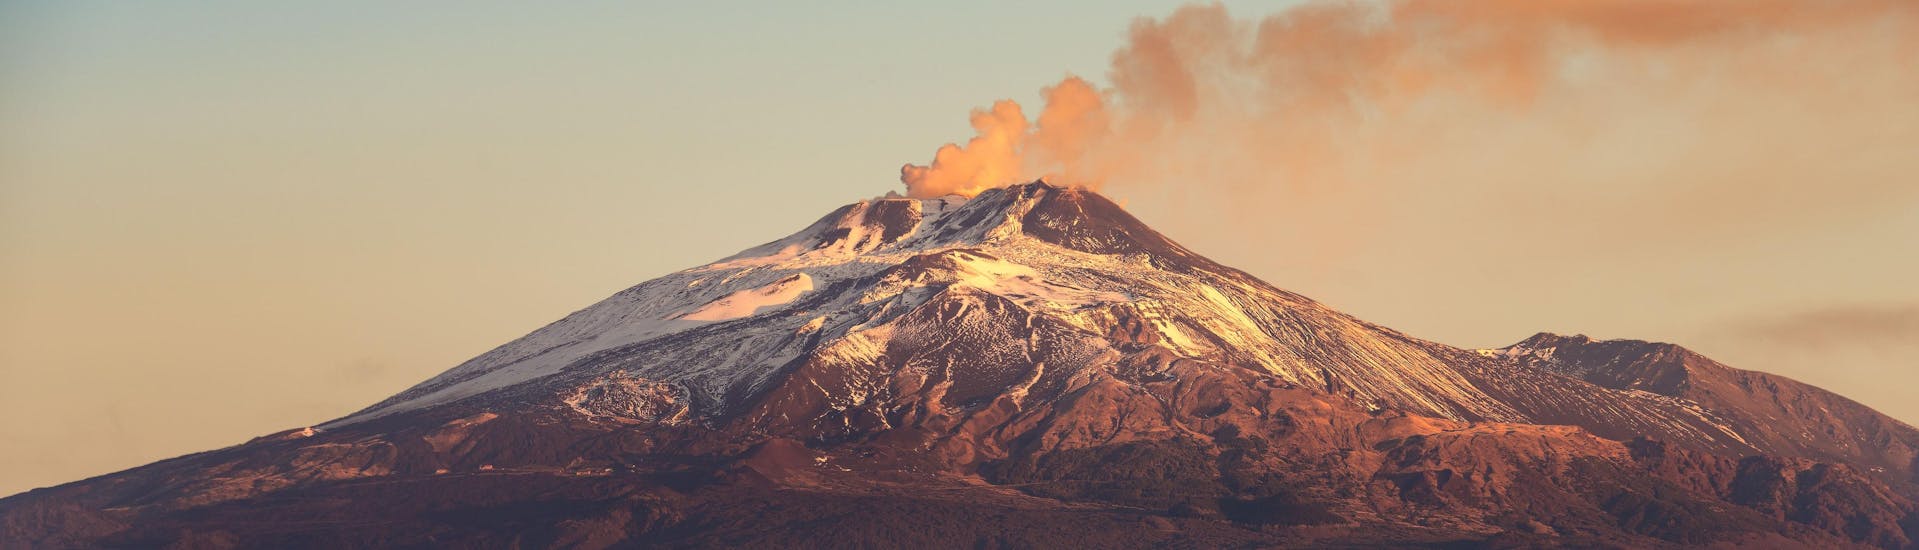  Vue sur le mont Etna, un volcan populaire pour les excursions & randonnées.